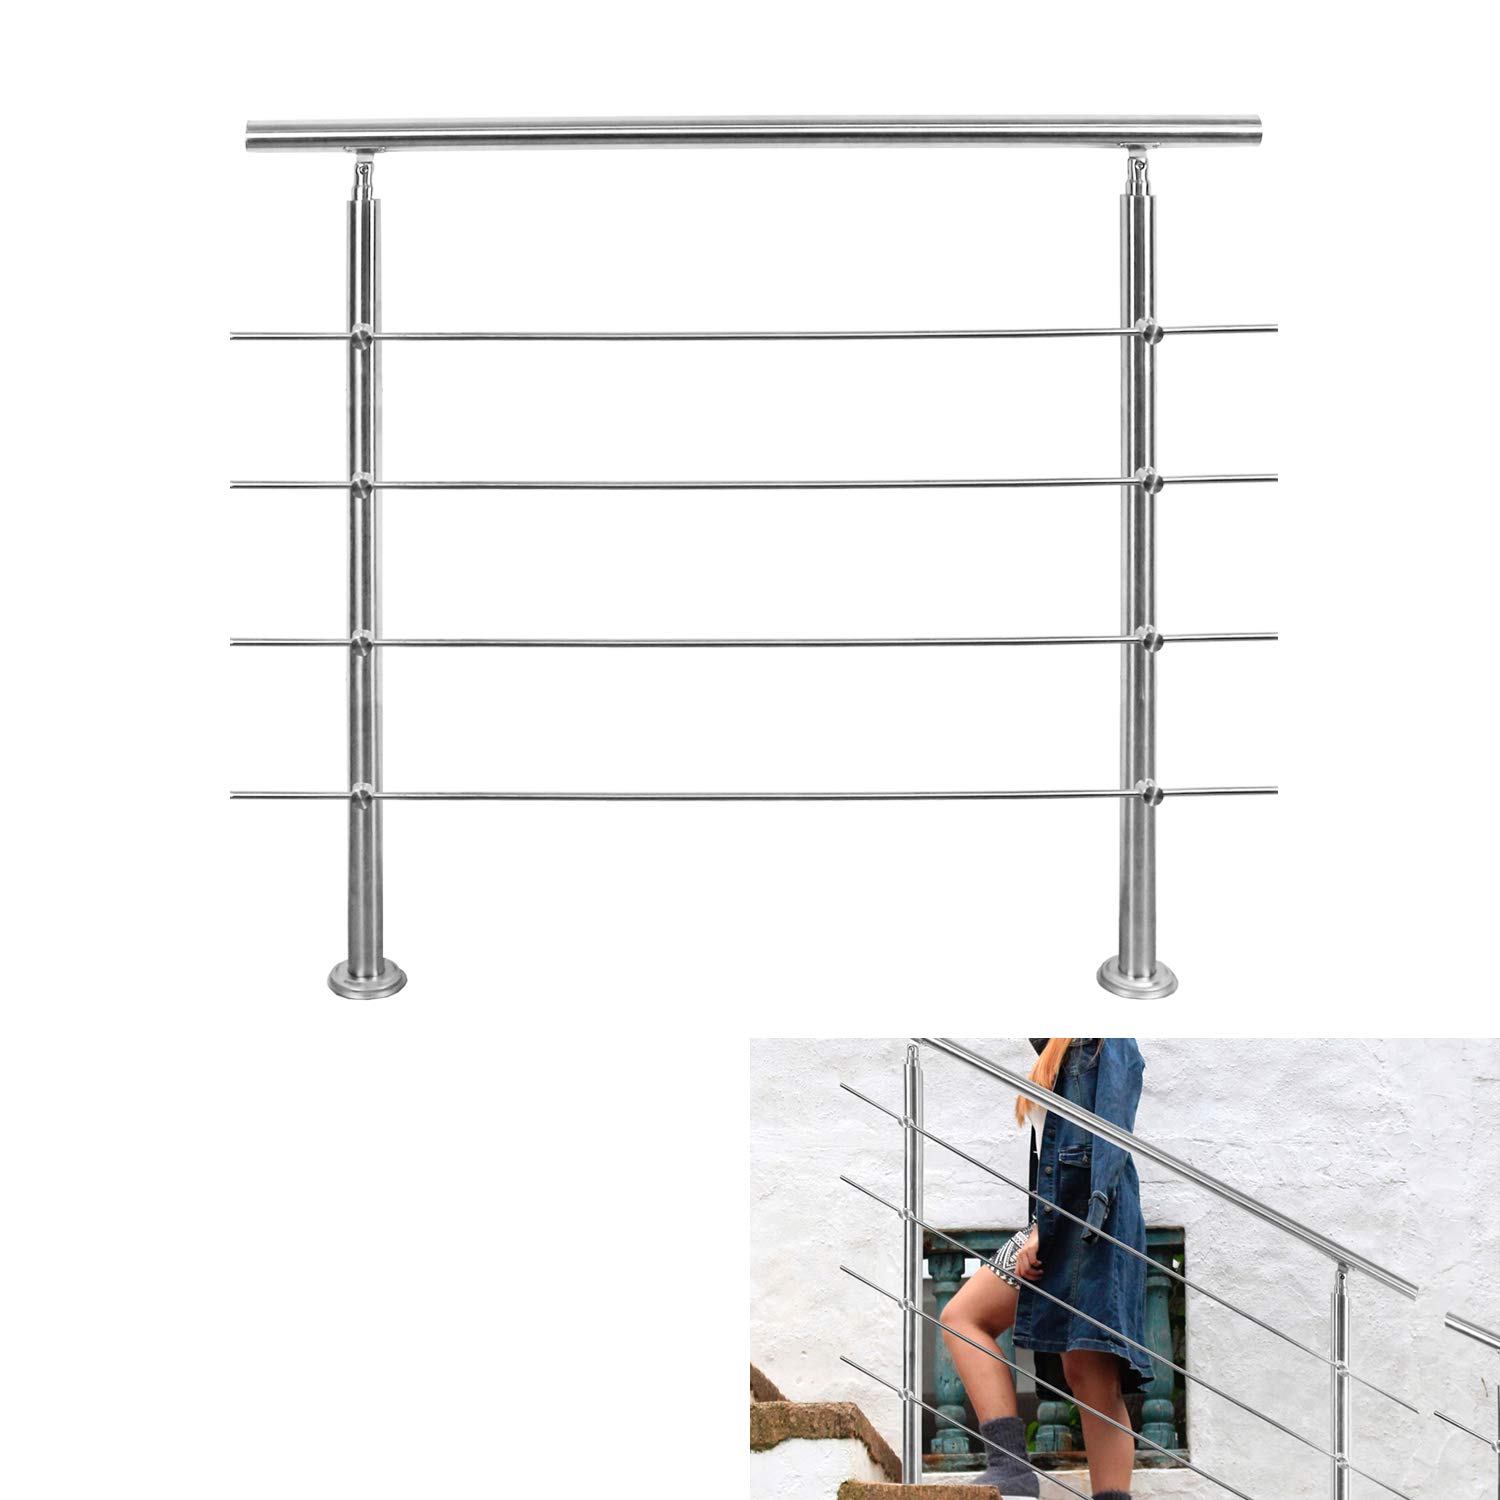 Riossad Edelstahl Handlauf Geländer für Balkon Brüstung Treppen mit/ohne Querstreben (120cm, 4 Querstreben)